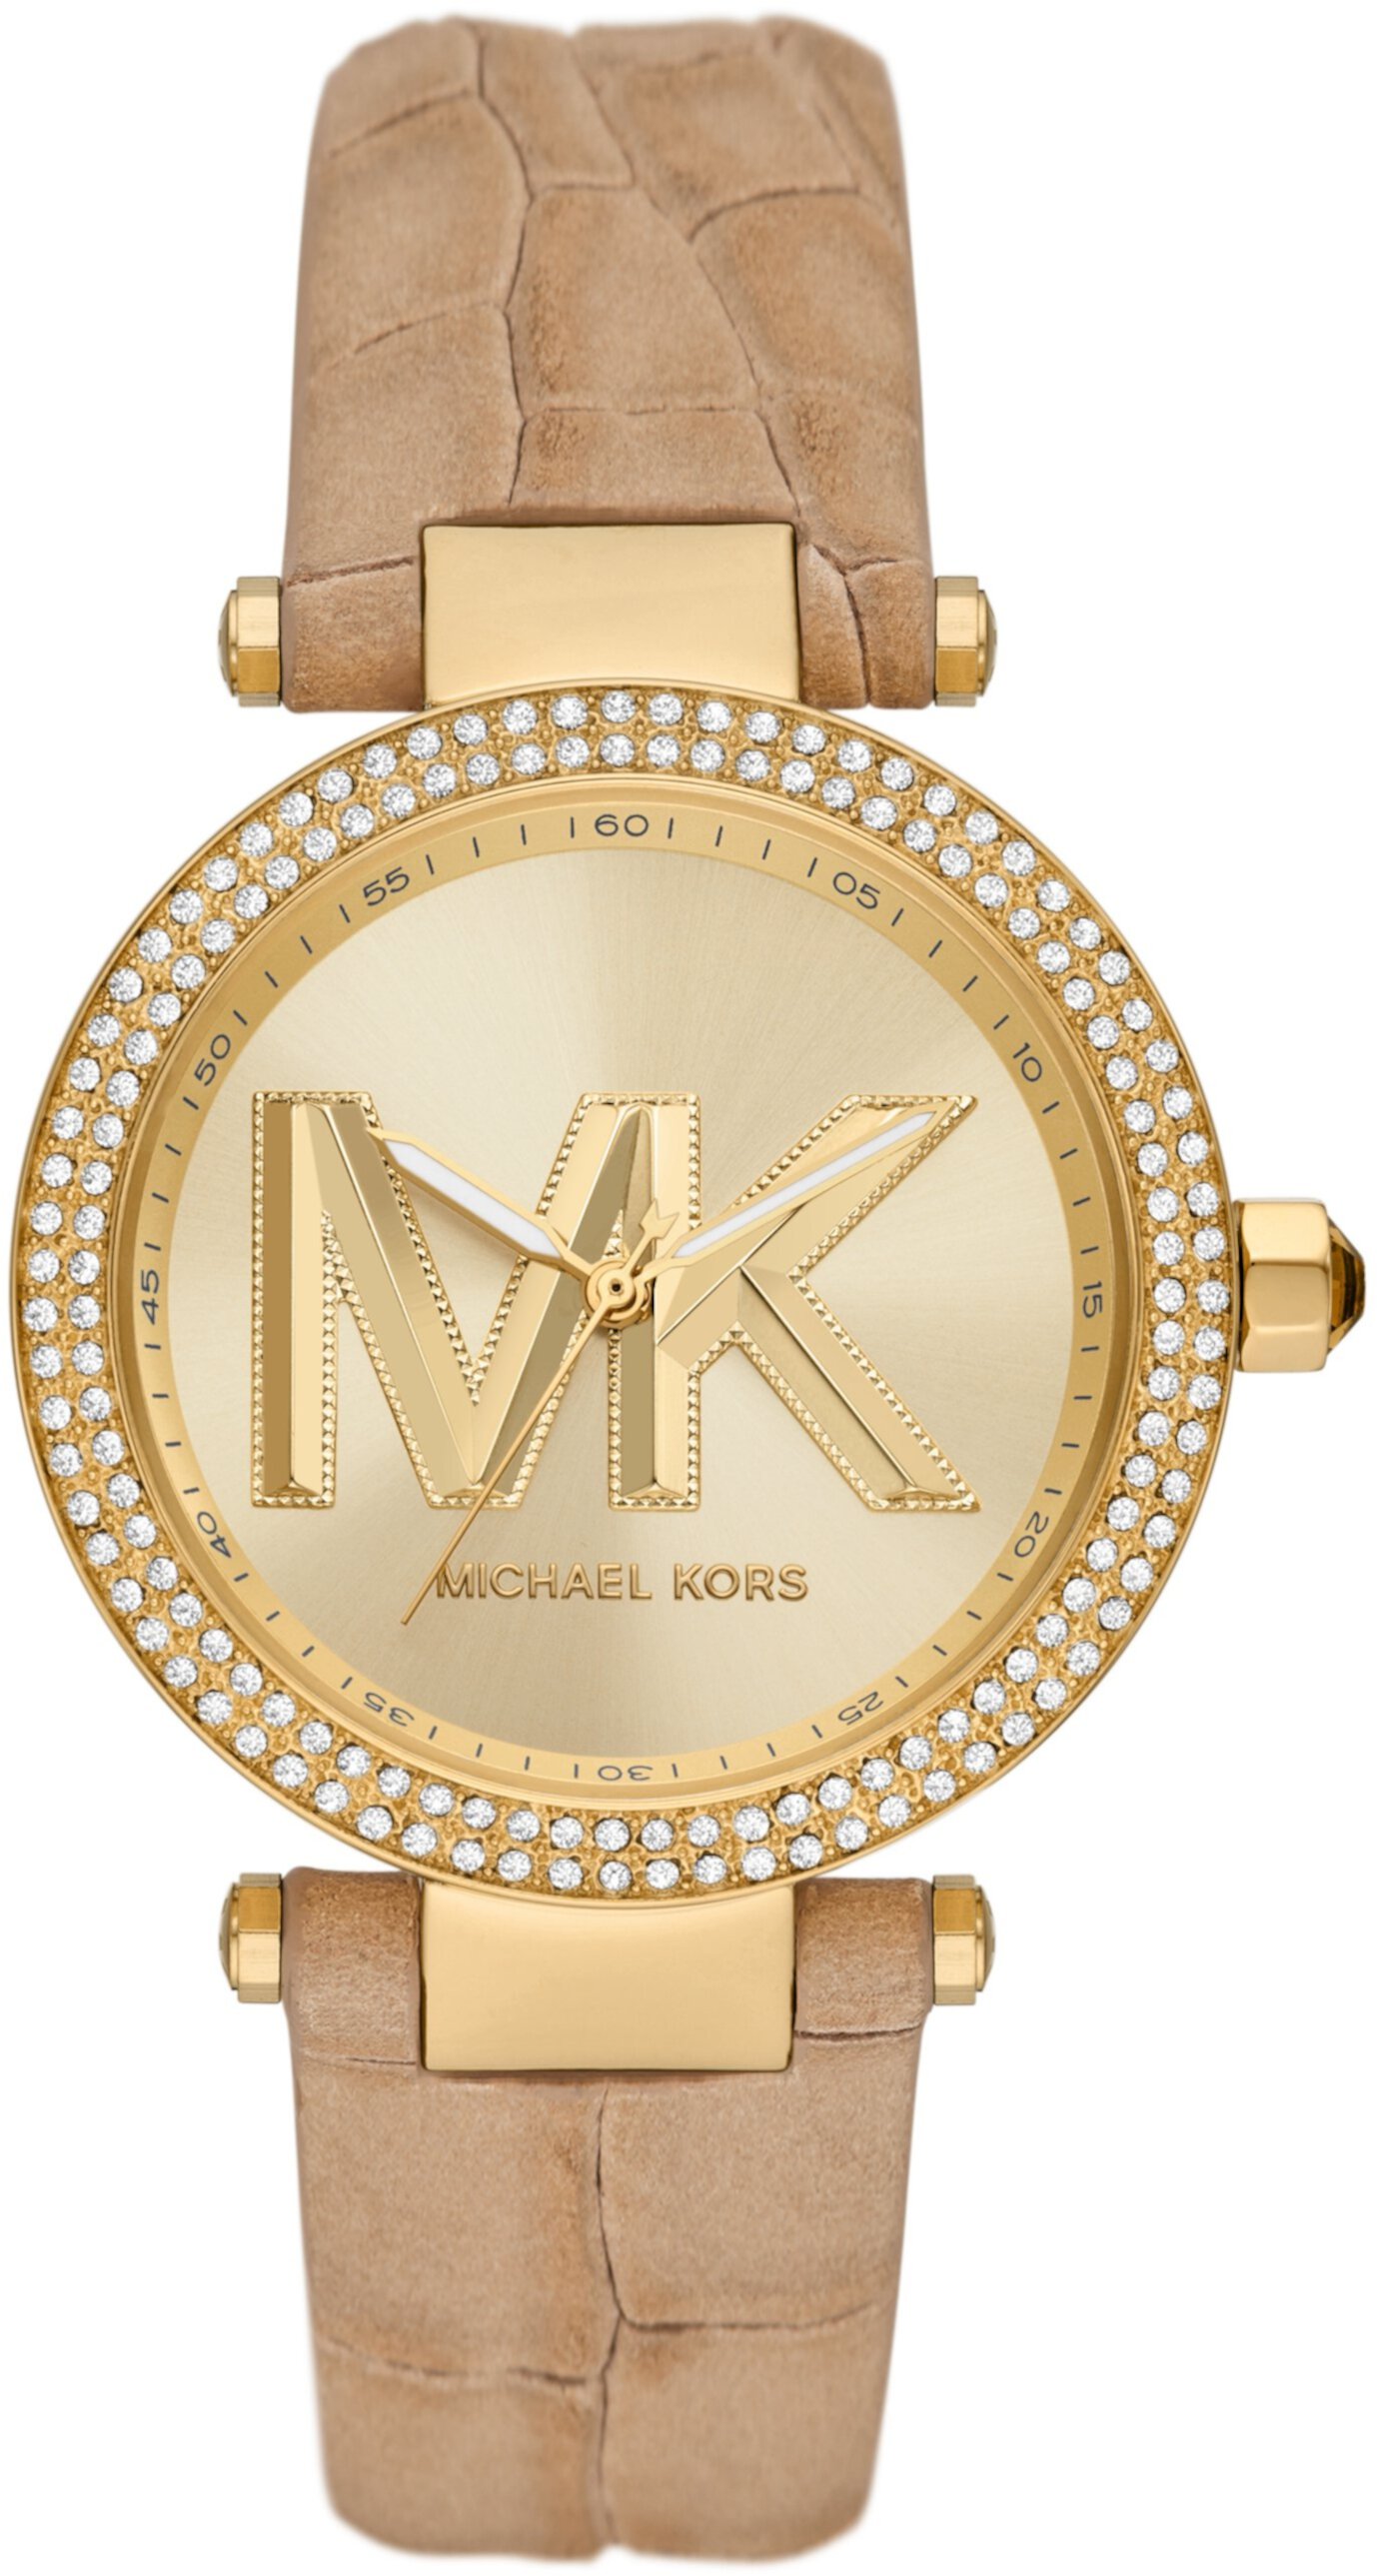 MK4725 — Кожаные часы Parker с тремя стрелками Michael Kors